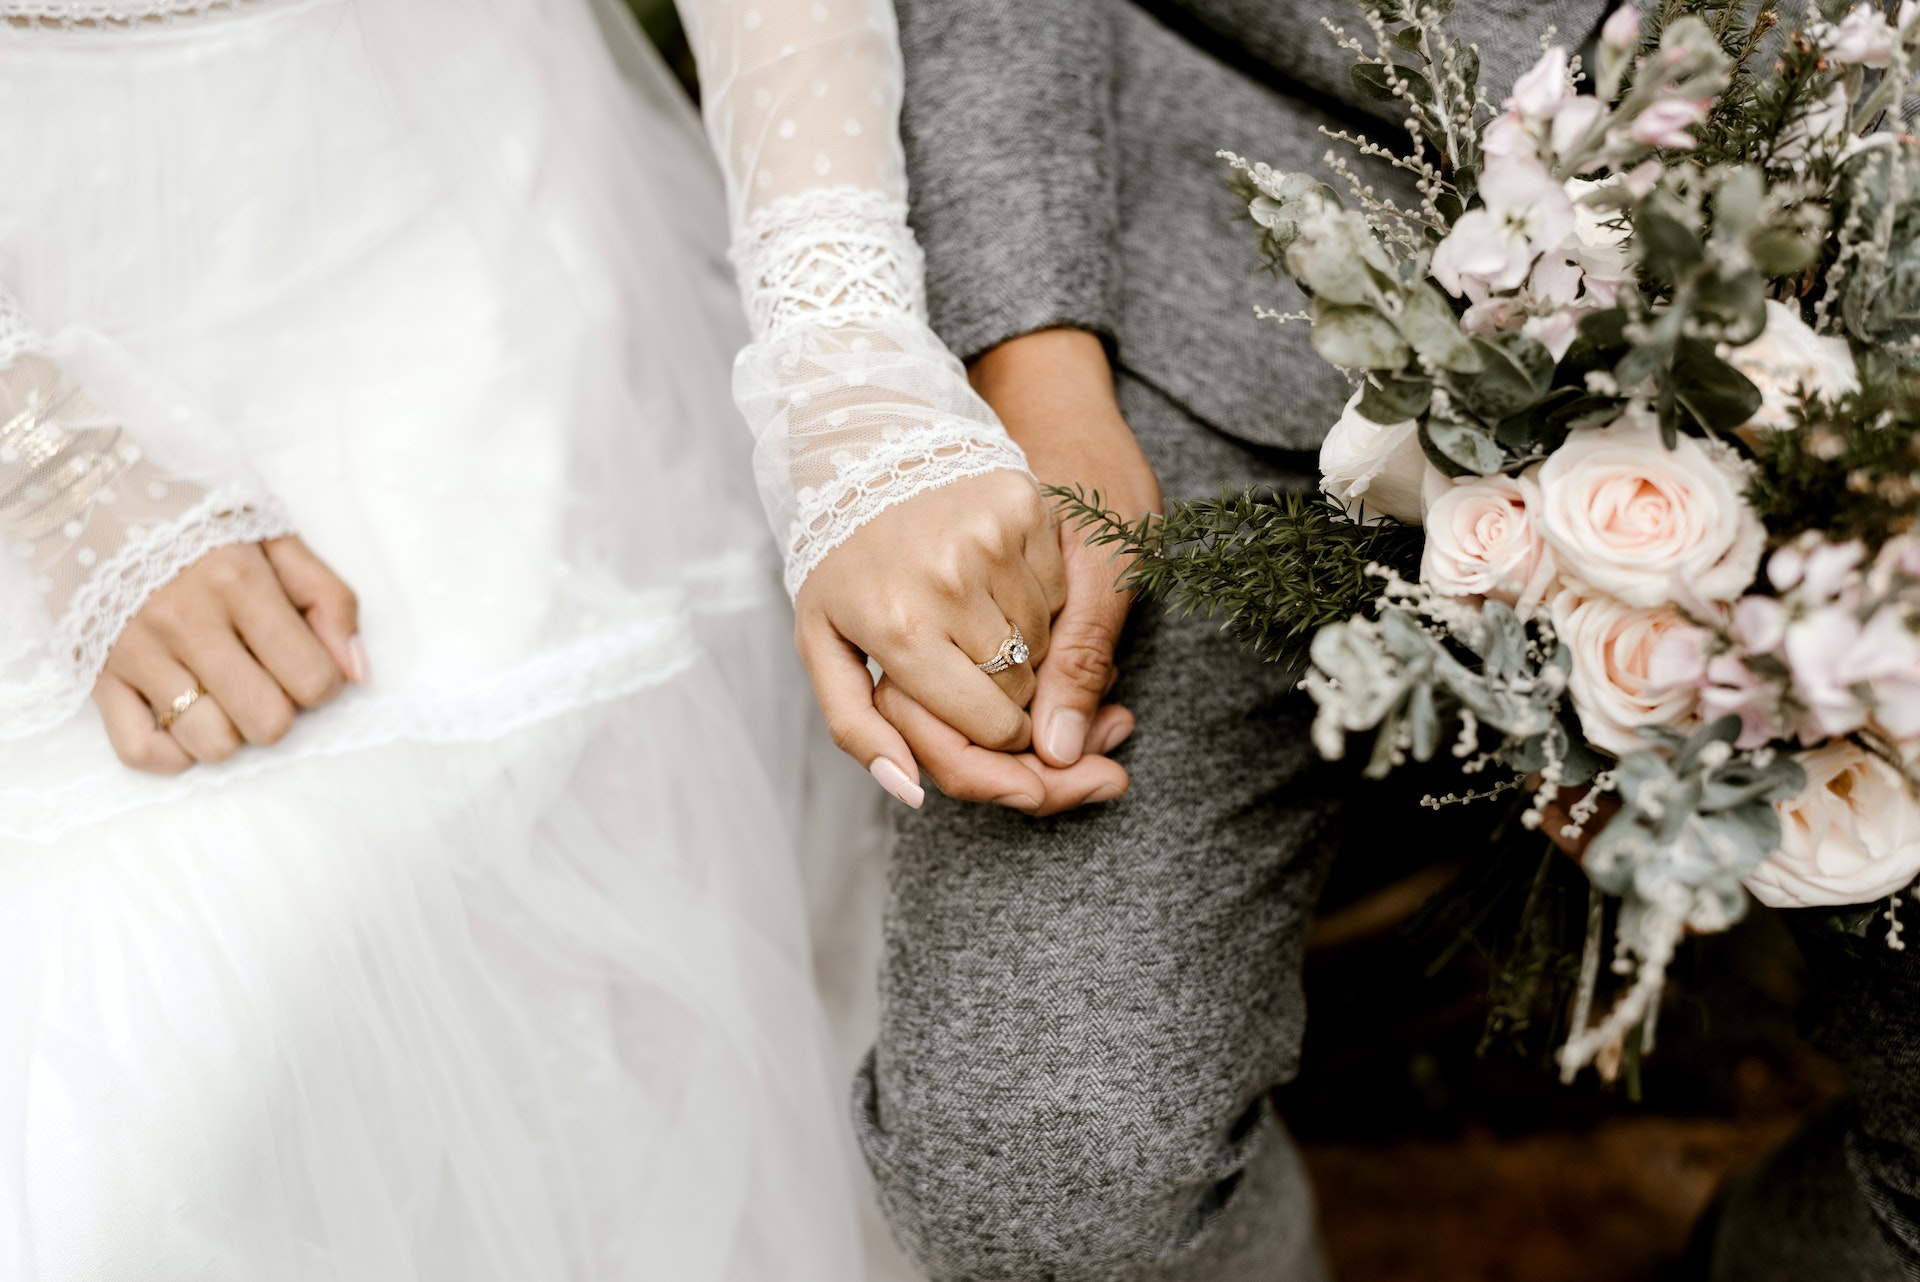 La mariée et le marié se tiennent par la main | Source : Pexels